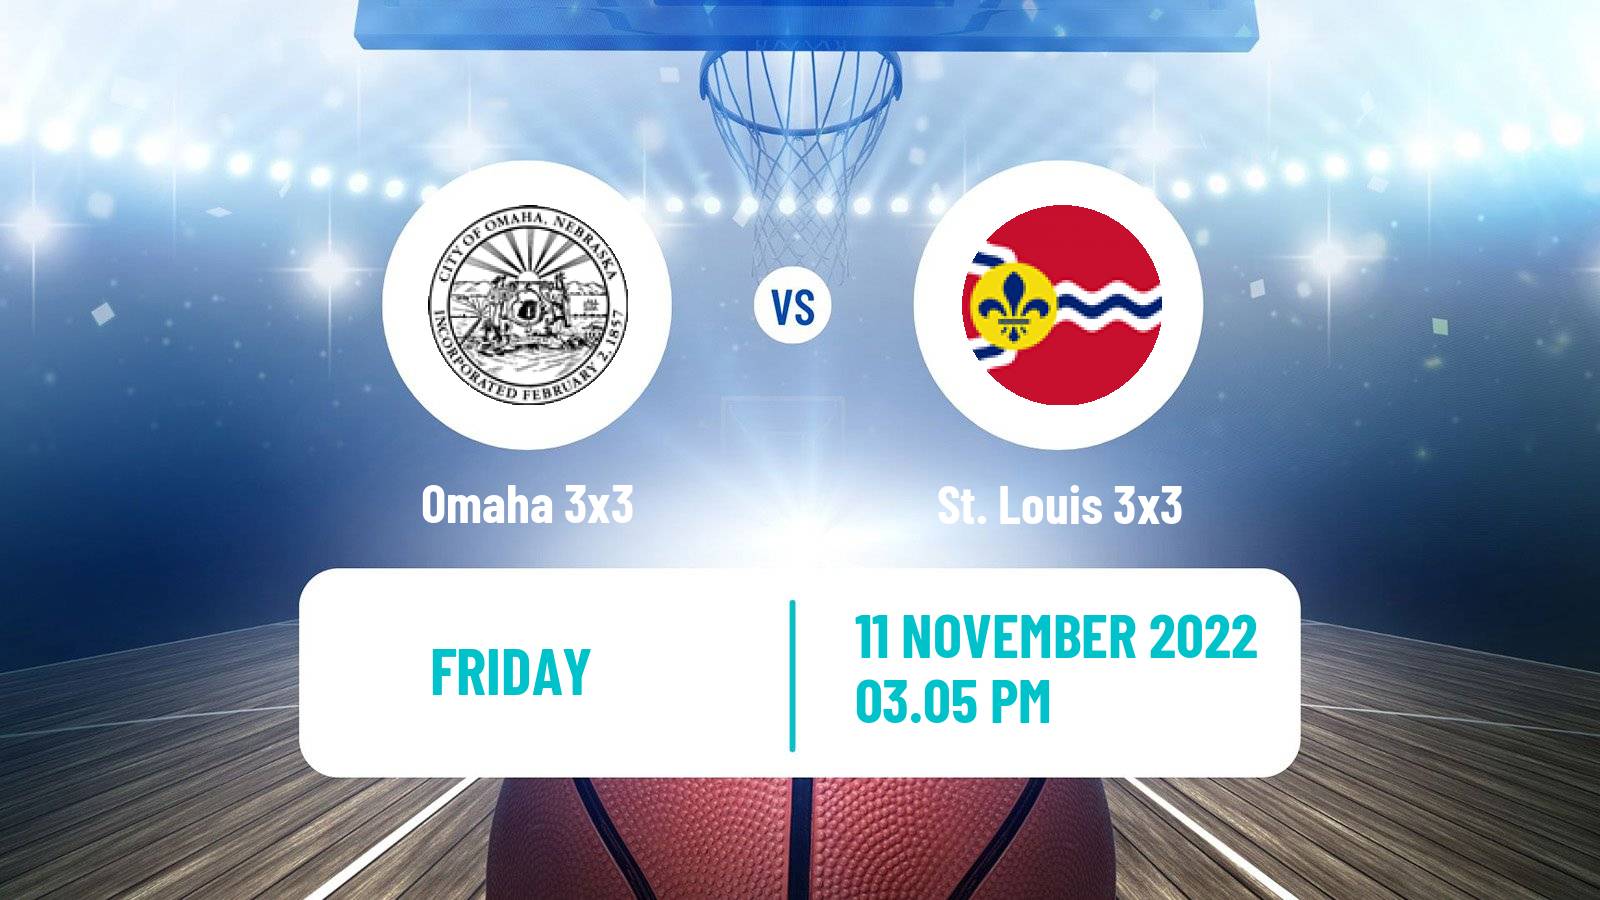 Basketball World Tour Riyadh 3x3 Omaha 3x3 - St. Louis 3x3